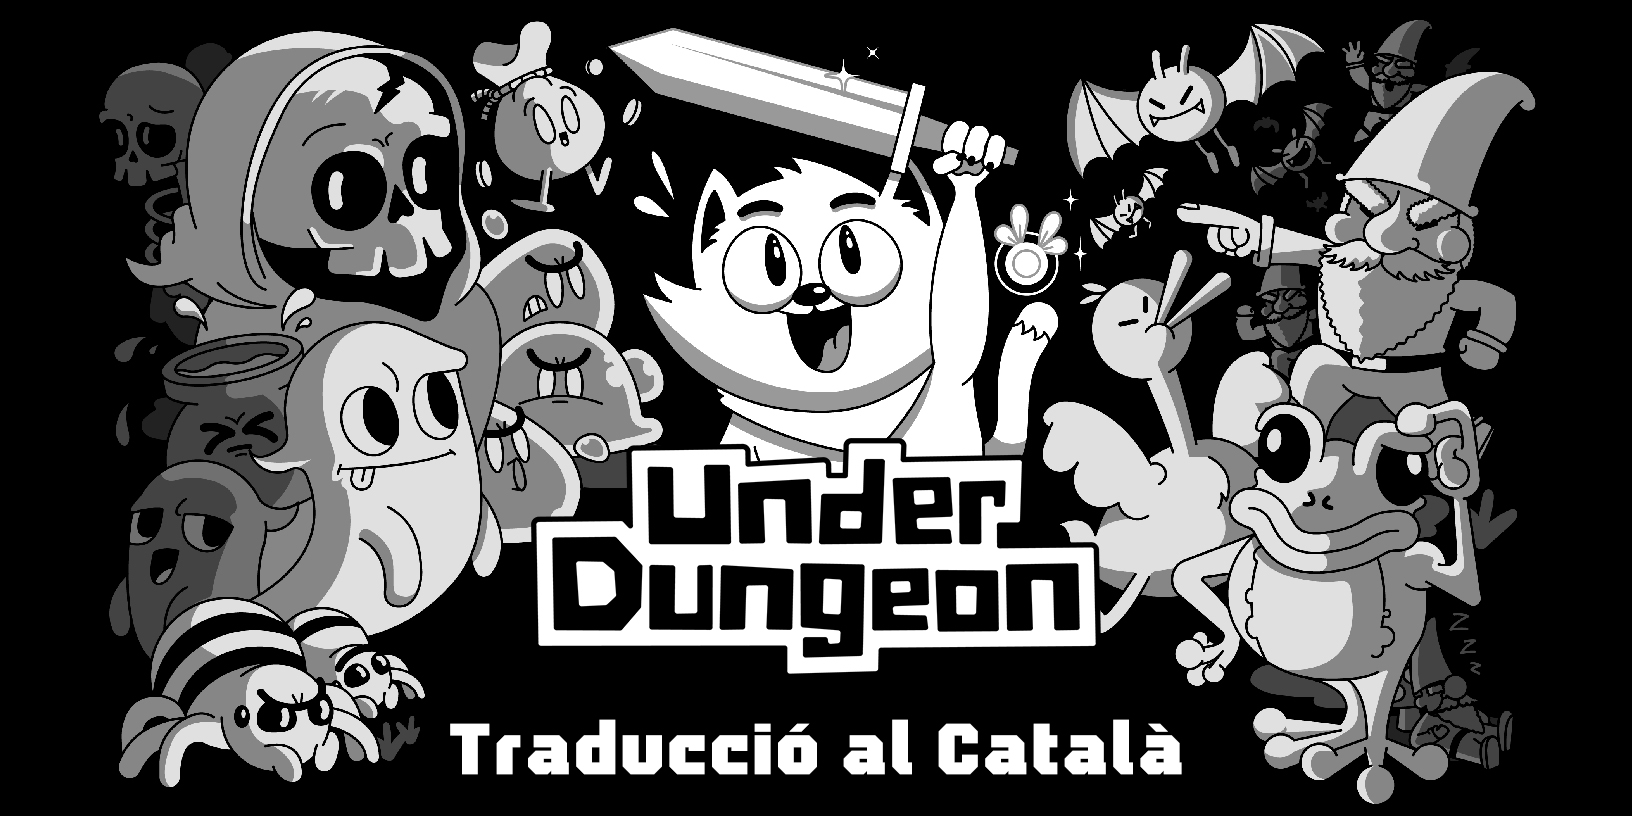 La traducció al català d’Under Dungeon arriba a Nintendo Switch